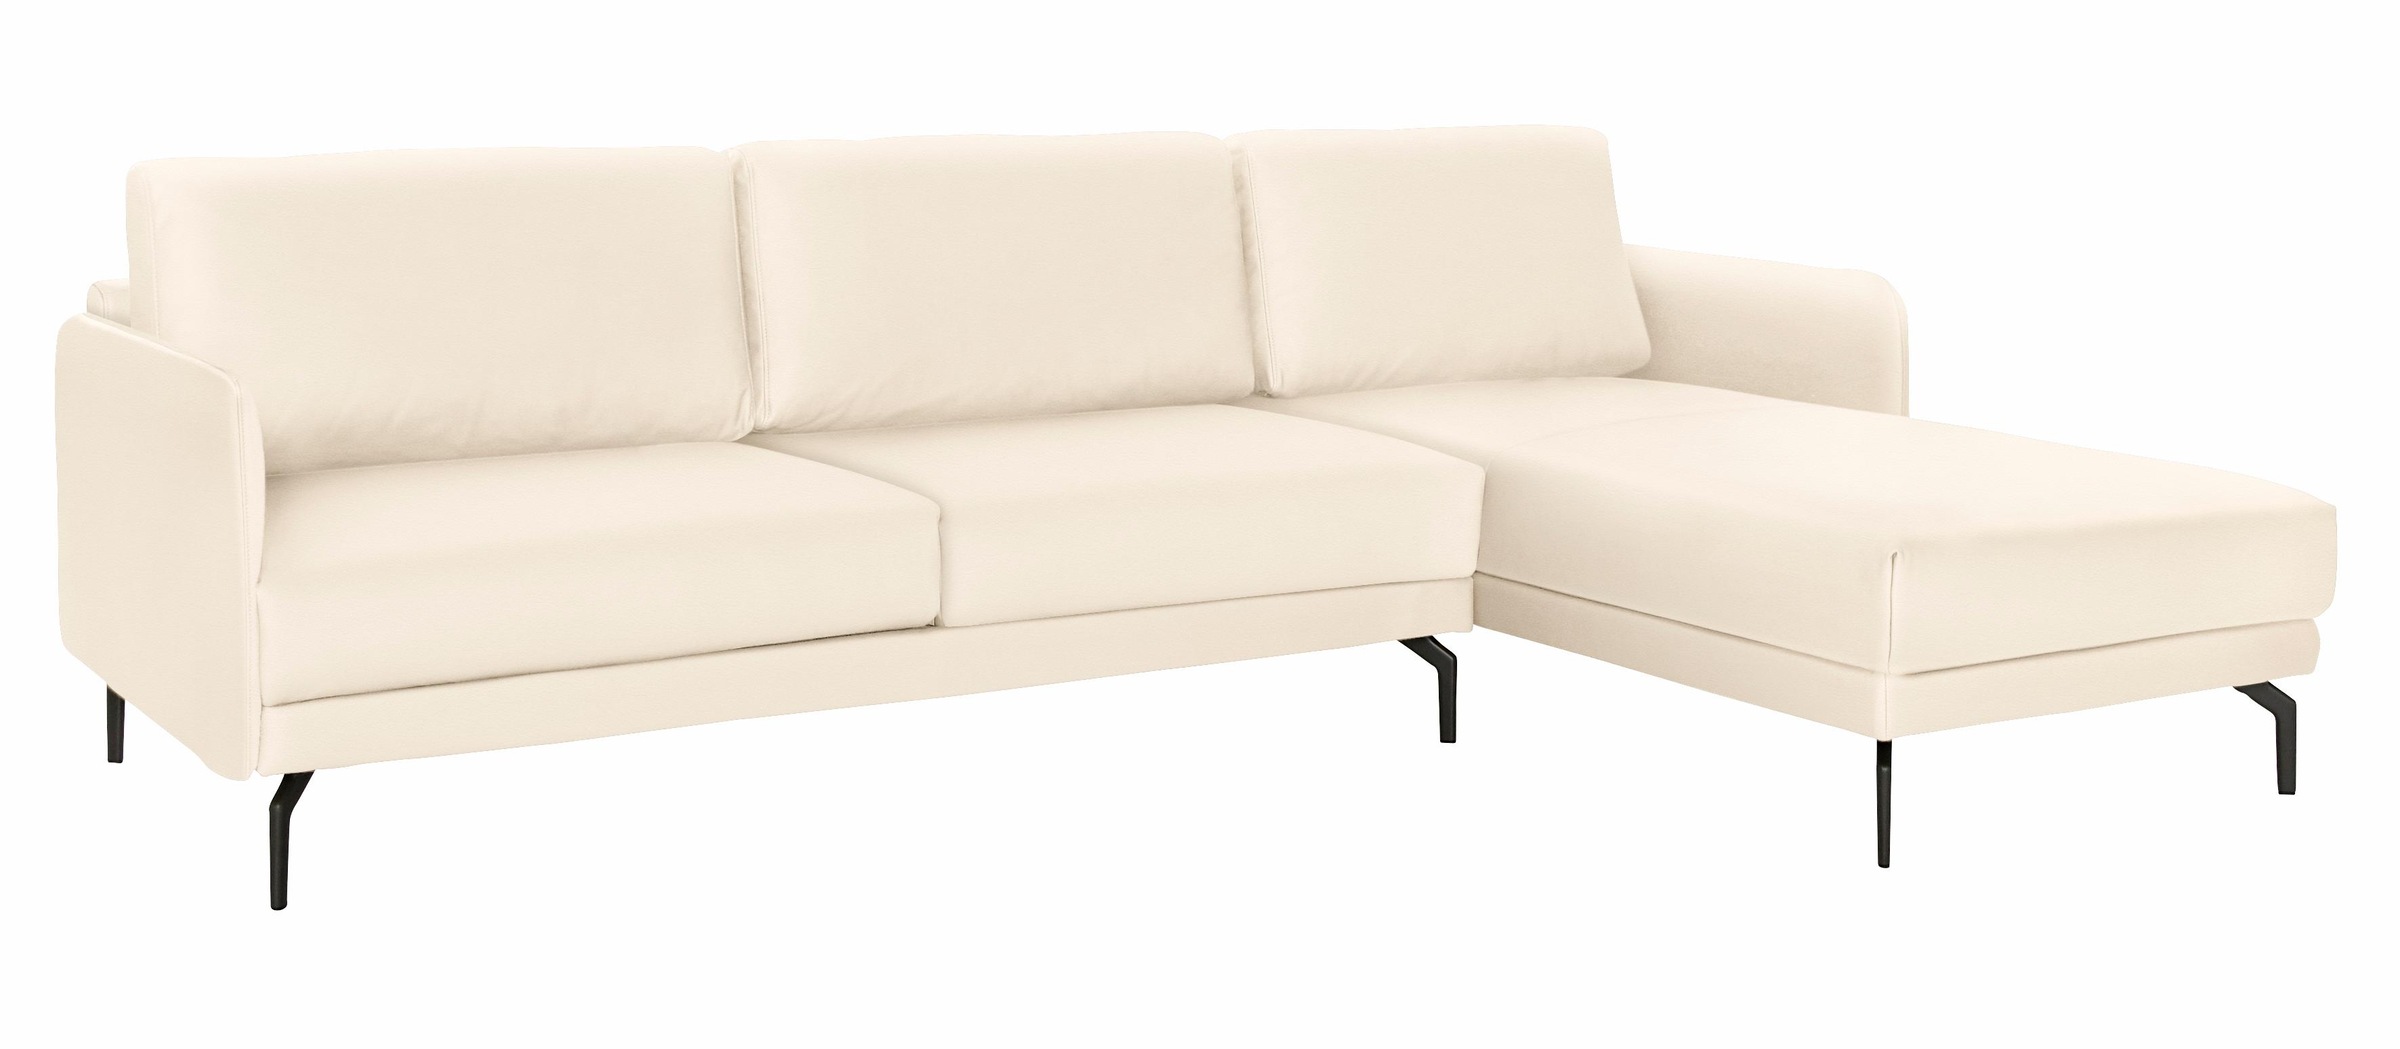 hülsta sofa »hs.450«, Armlehne Alugussfuß Breite Umbragrau sehr schmal, Ecksofa 274 Raten kaufen auf cm